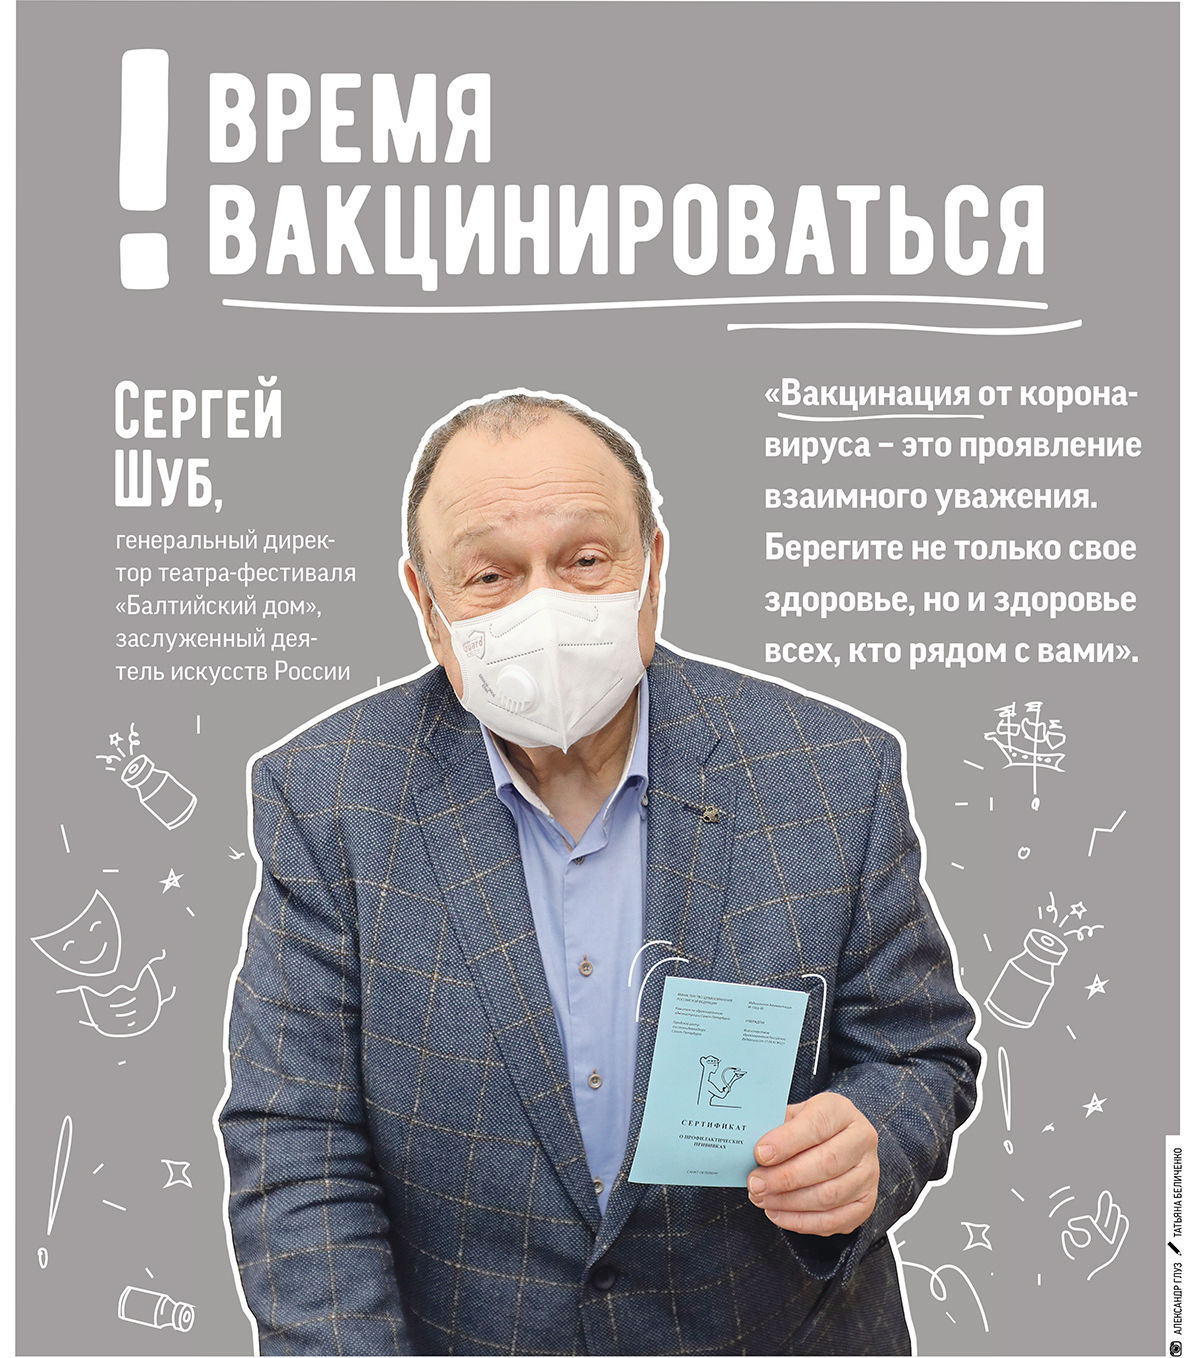 Генеральный директор театра «Балтийский дом» Сергей Шуб рассказал о важности вакцинирования